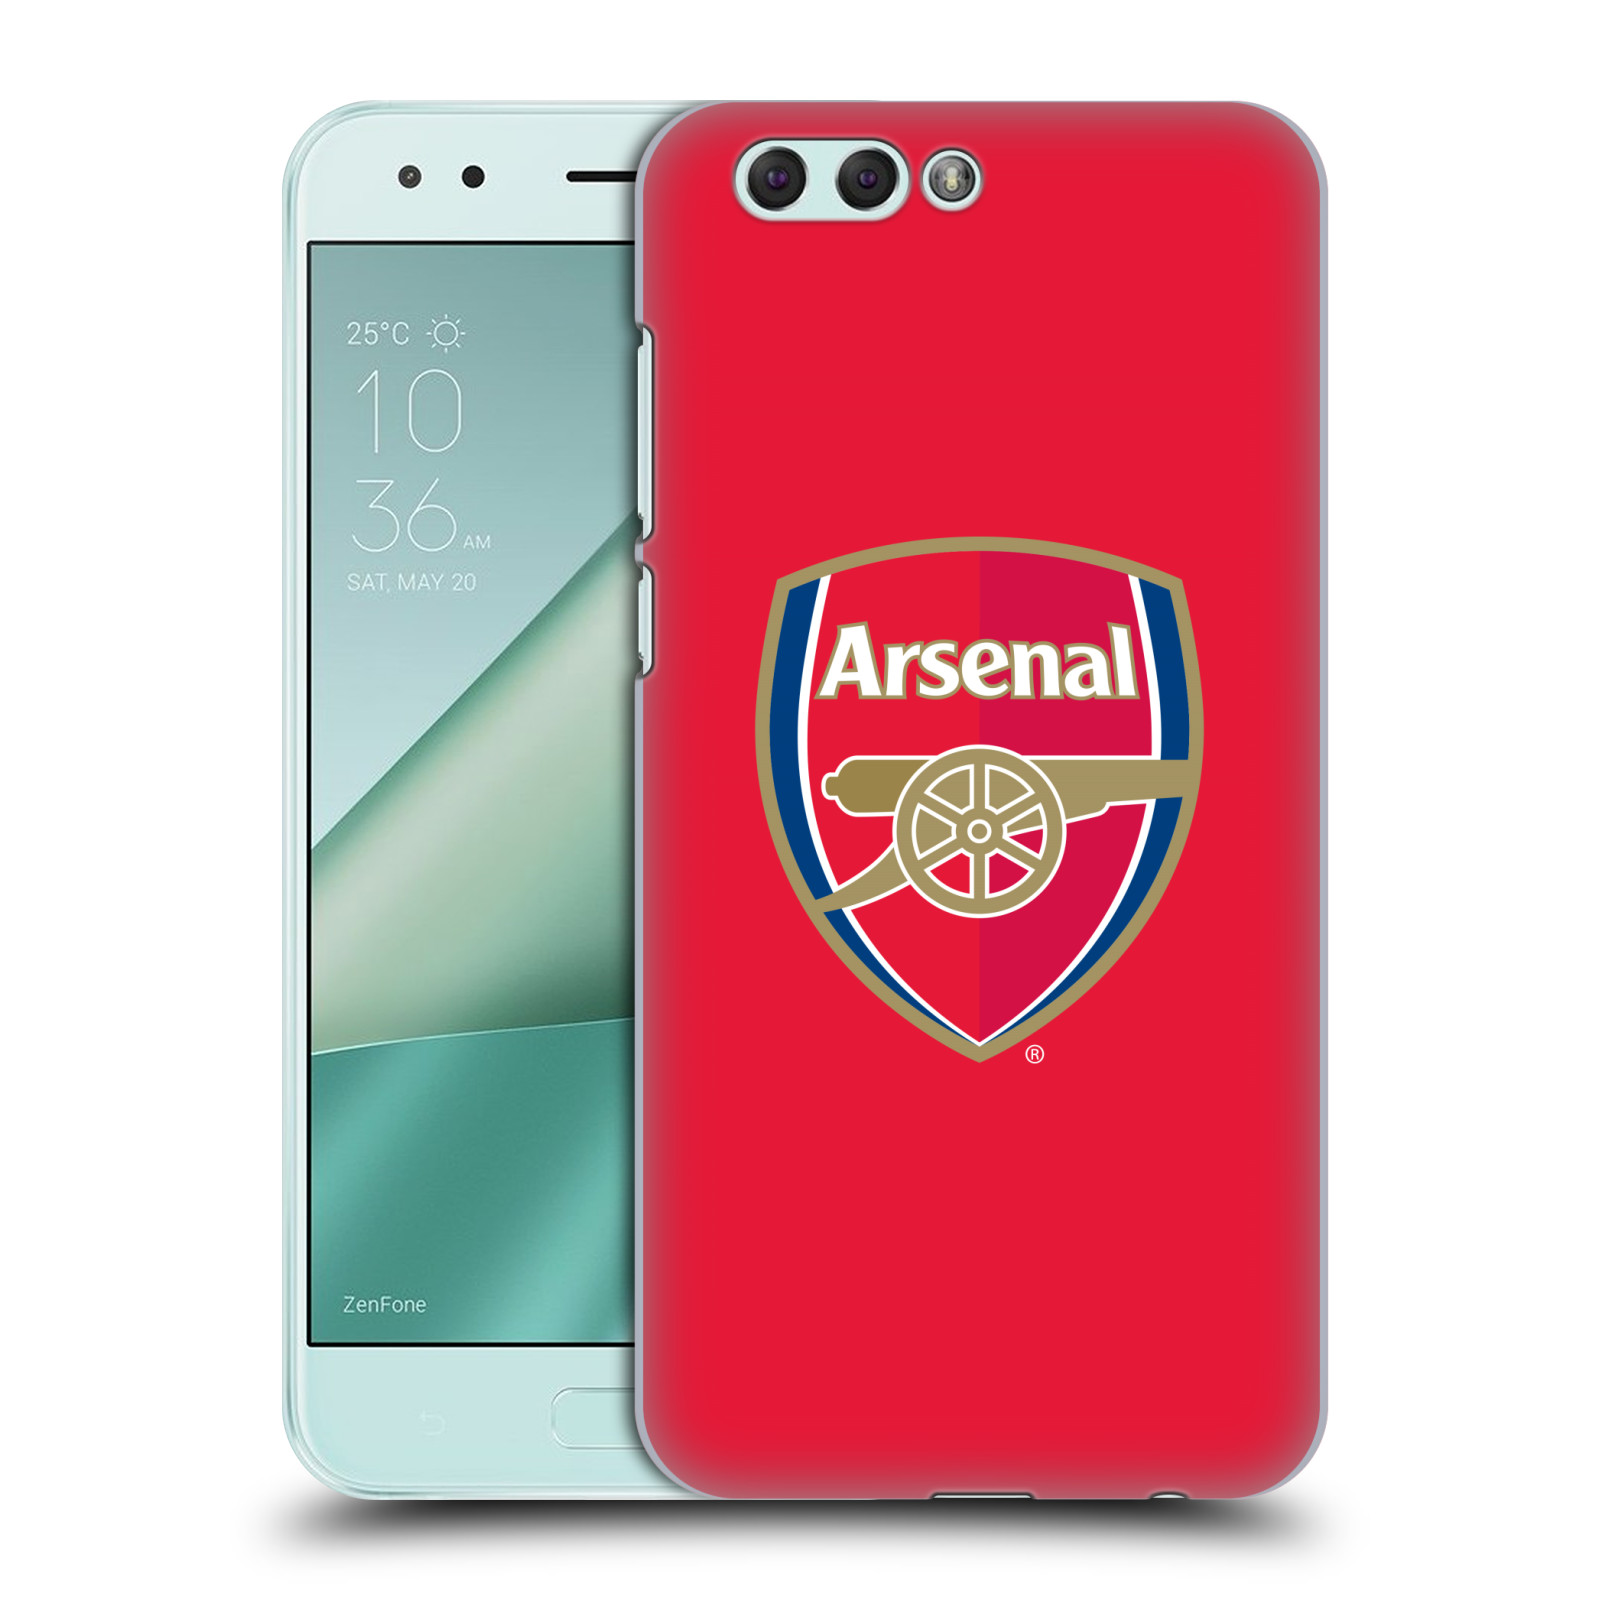 HEAD CASE plastový obal na mobil Asus Zenfone 4 ZE554KL Fotbalový klub Arsenal znak barevný červené pozadí